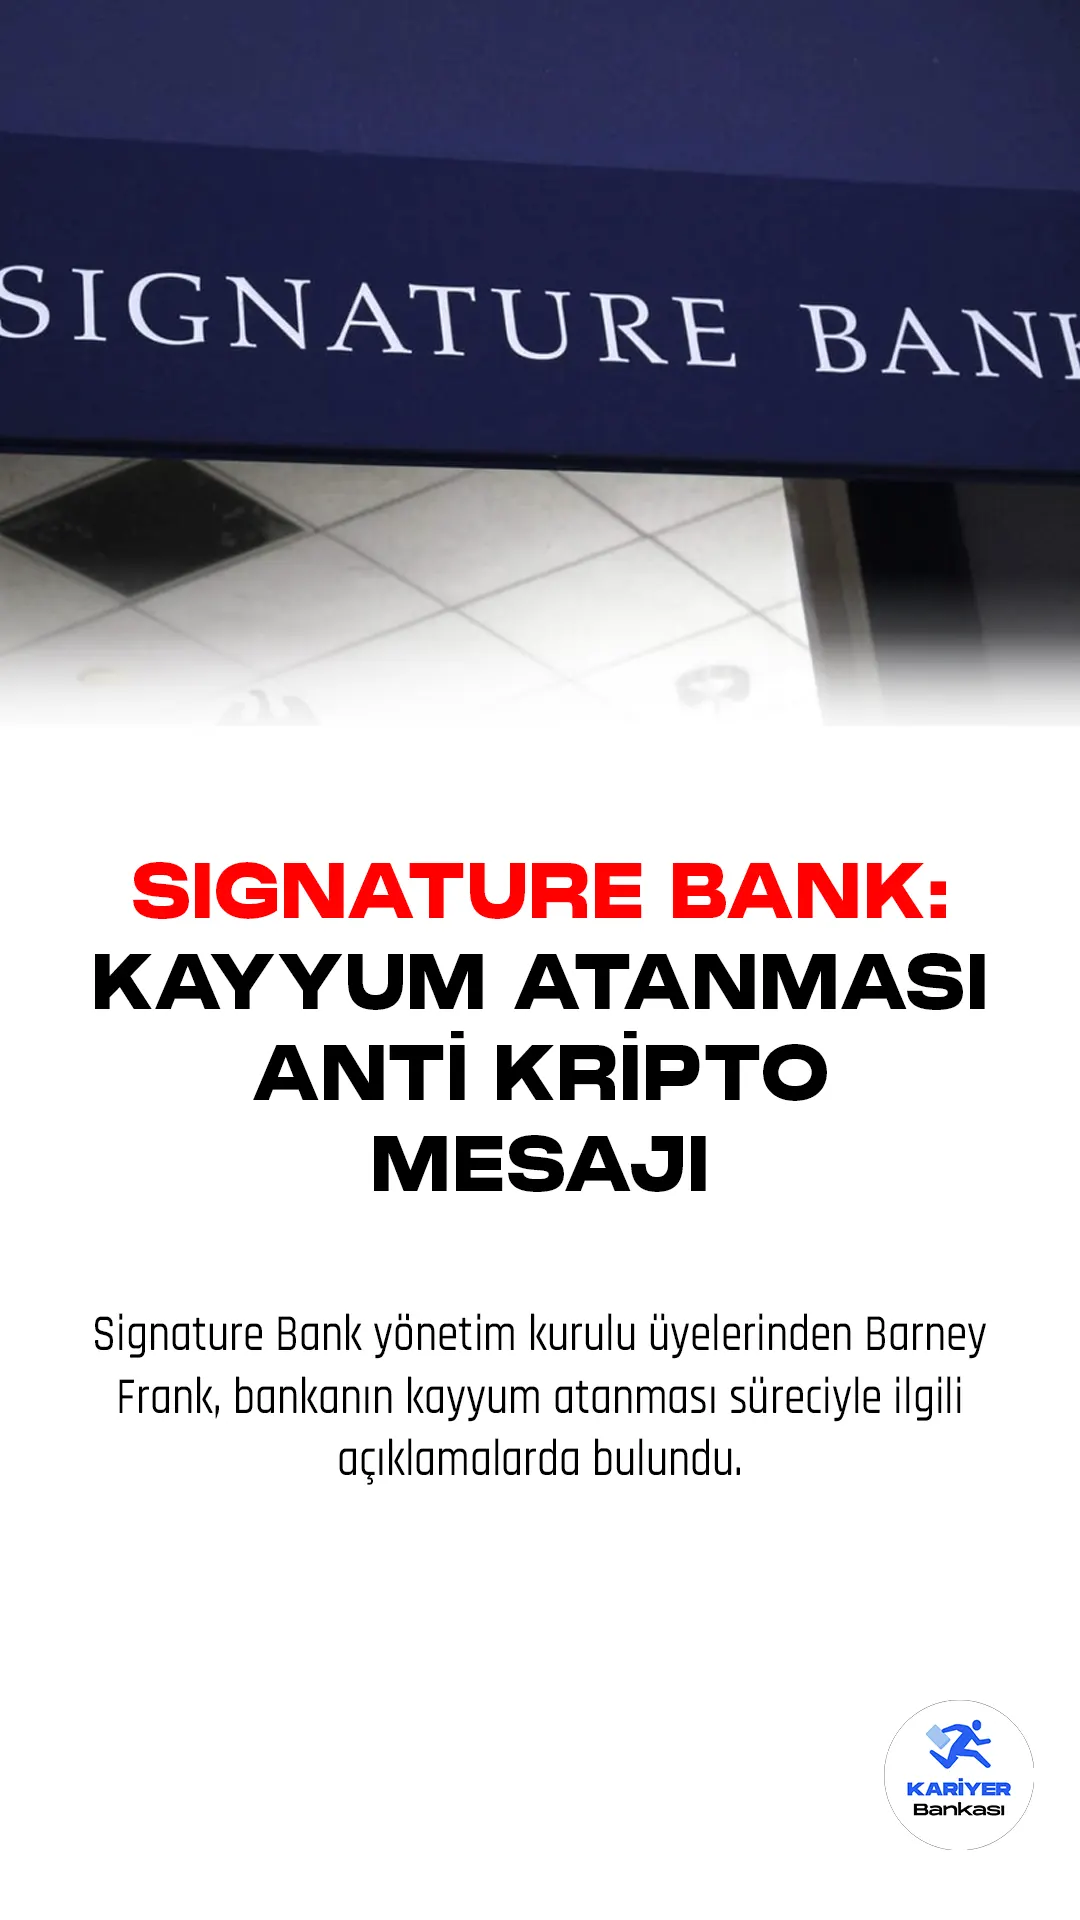 Signature Bank yönetim kurulu üyelerinden Barney Frank, bankanın kayyum atanması süreciyle ilgili açıklamalarda bulundu.